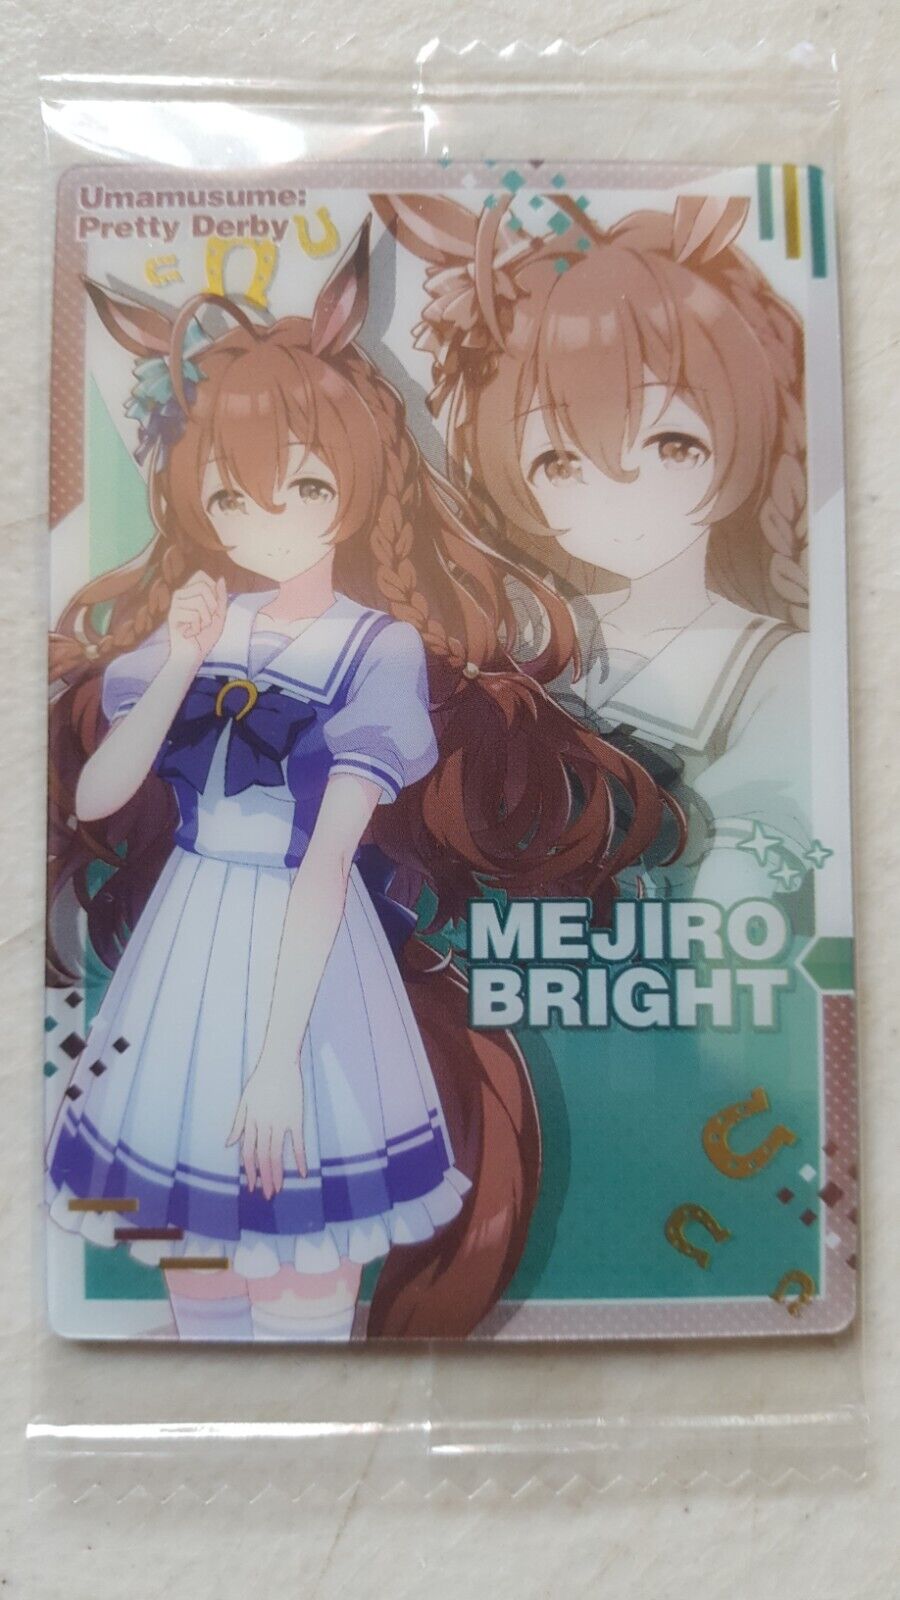 Bandai Wafer Card - Uma Musume: Pretty Derby - Mejiro Bright